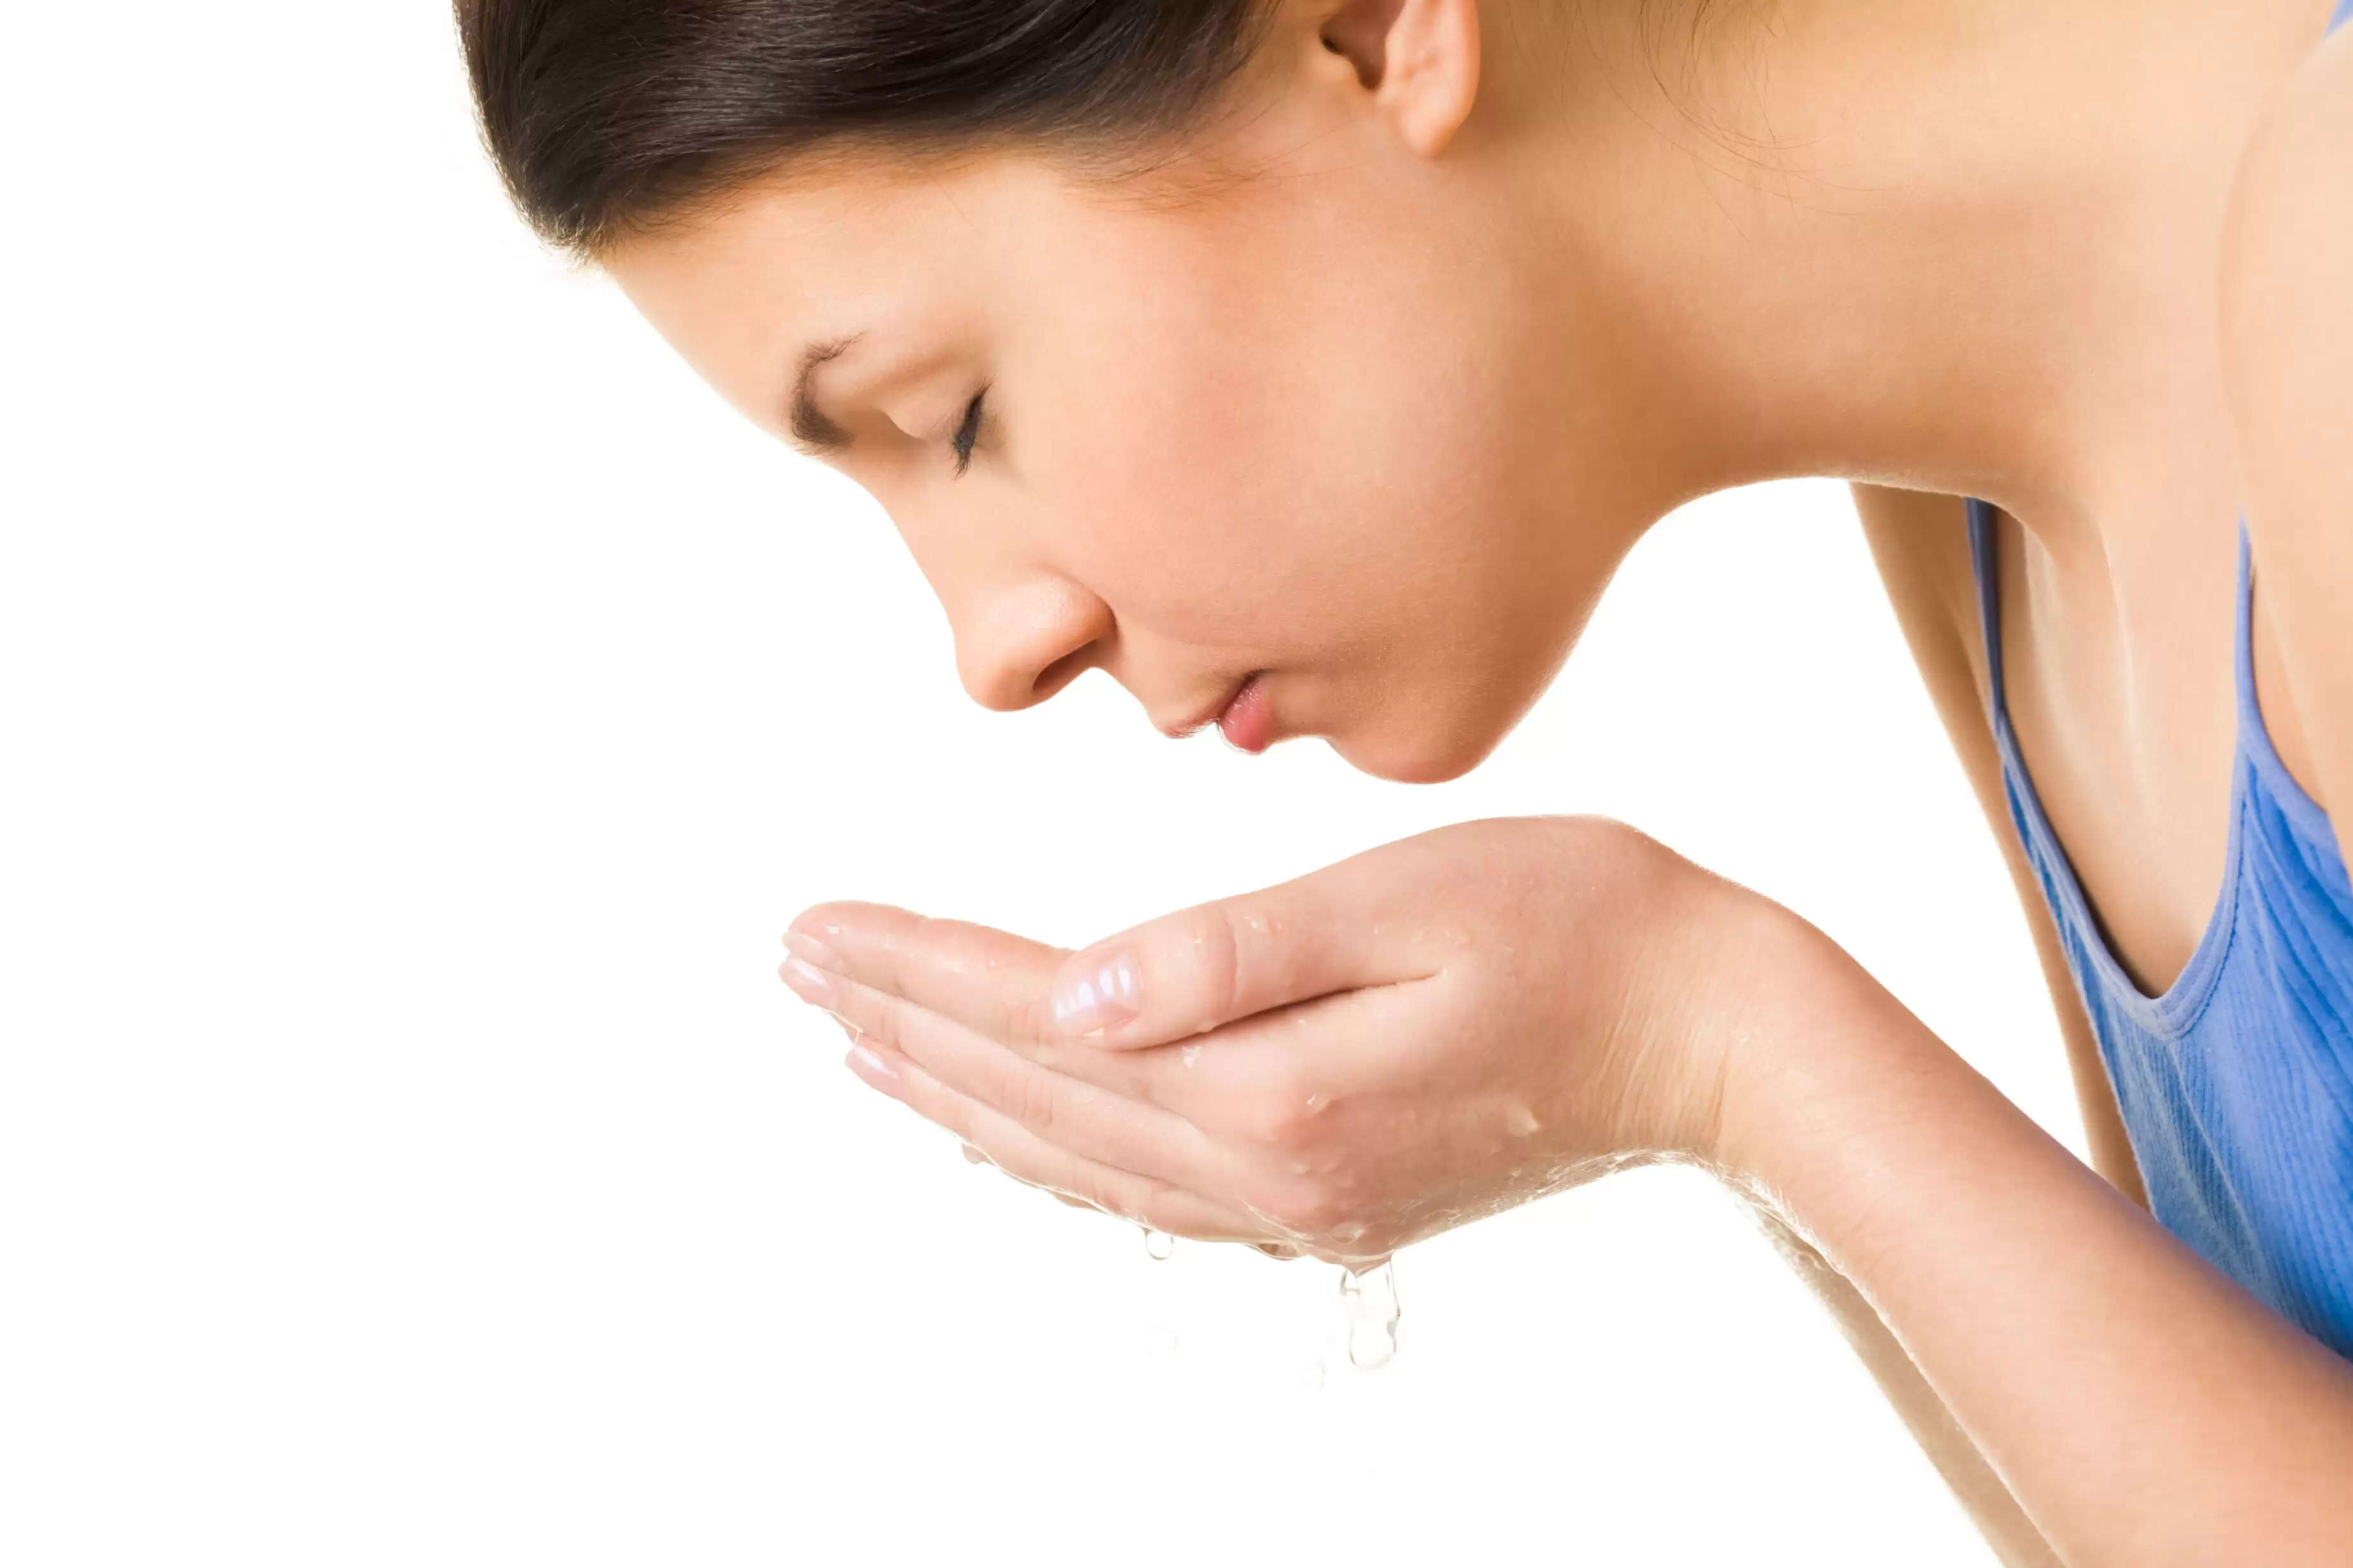 Salicylic Acid Face Wash Makes Short Shrift Of Skin Blemishes